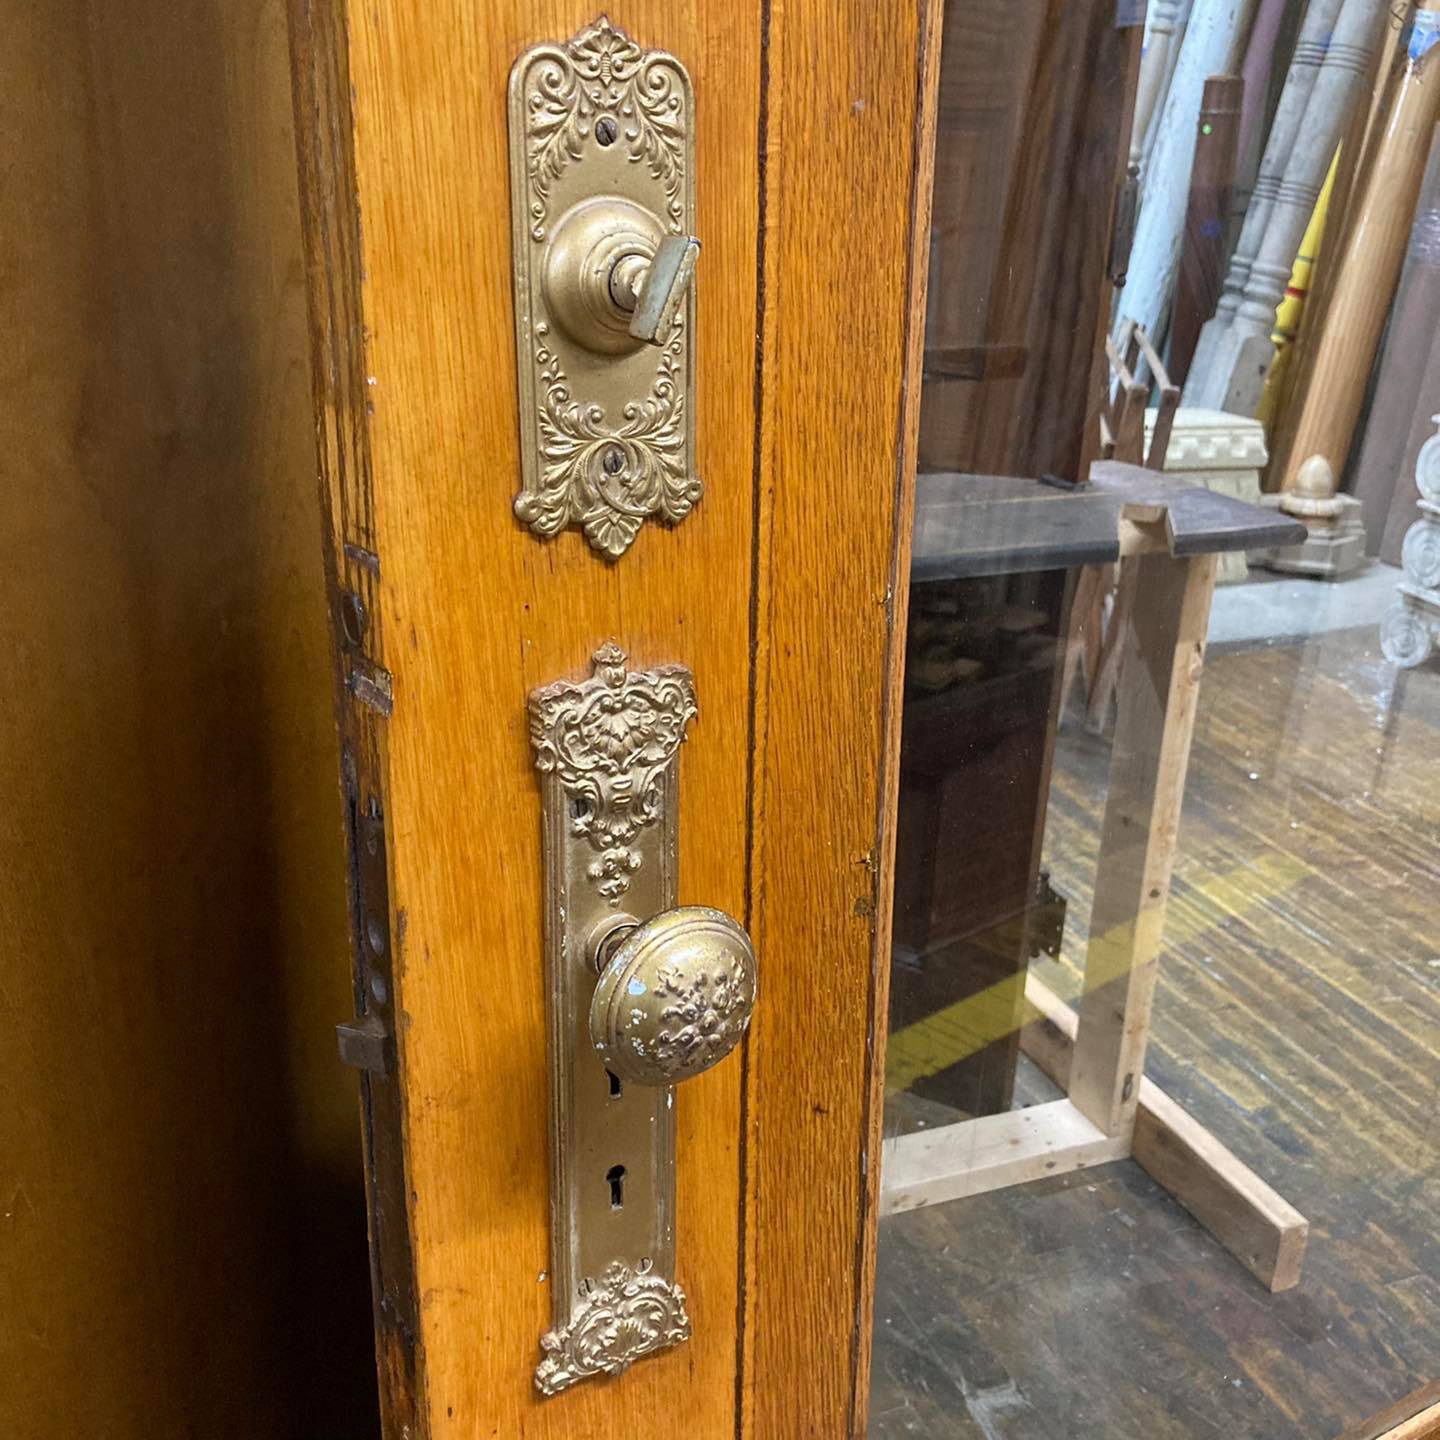 Antique Oak Entry Door With Original Hardware and Doorbell